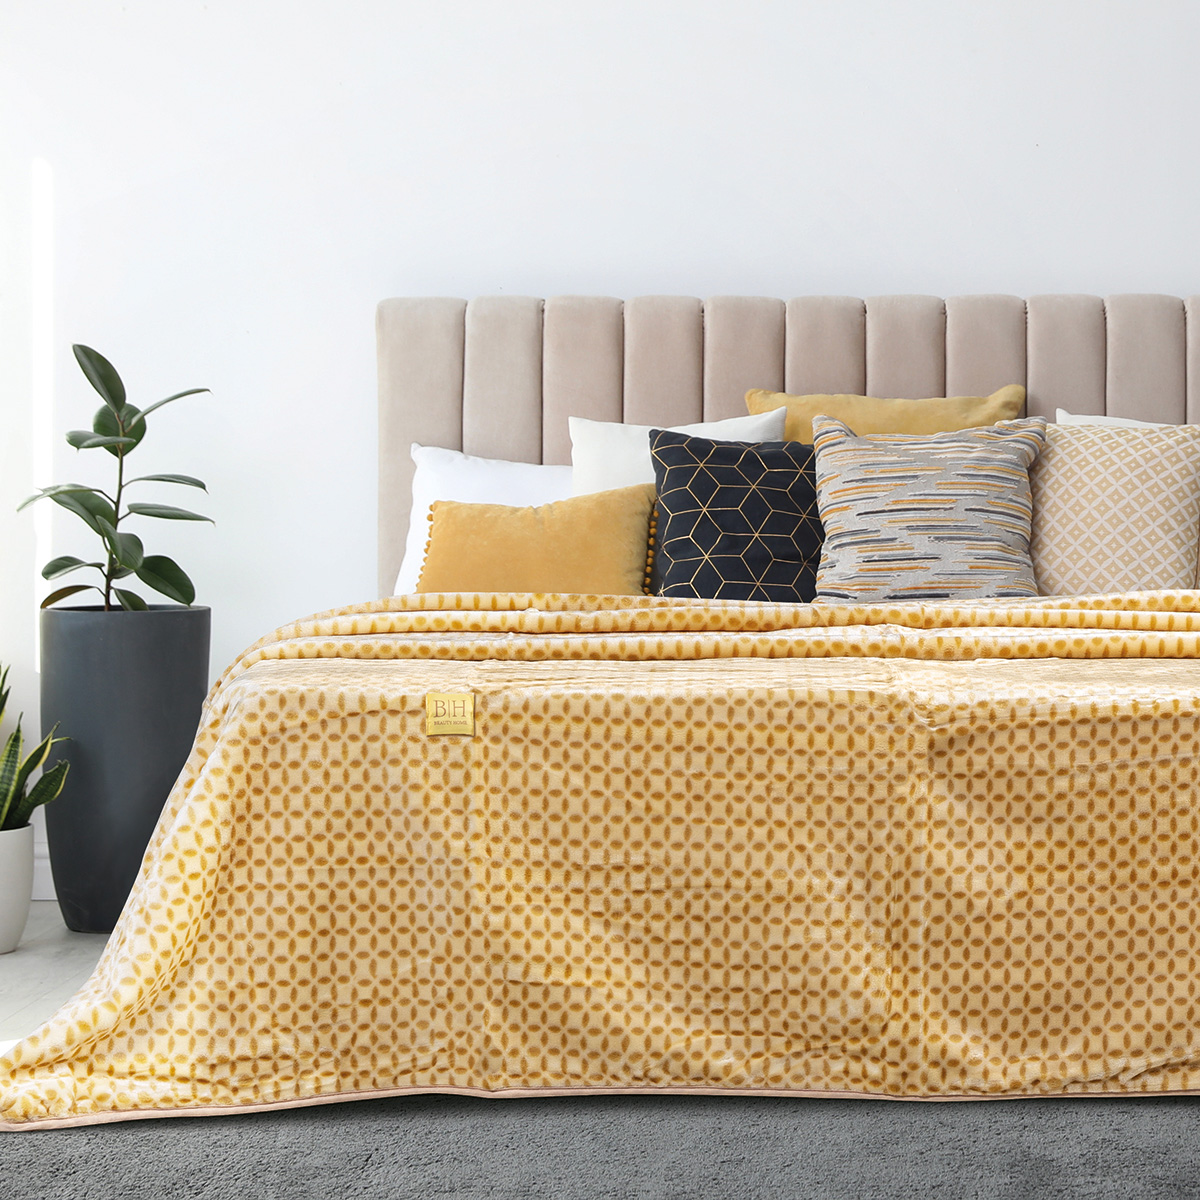 Κουβέρτα μονόχρωμη υπέρδιπλη Art 11000 σε 6 αποχρώσεις 220×240 Beauty Home